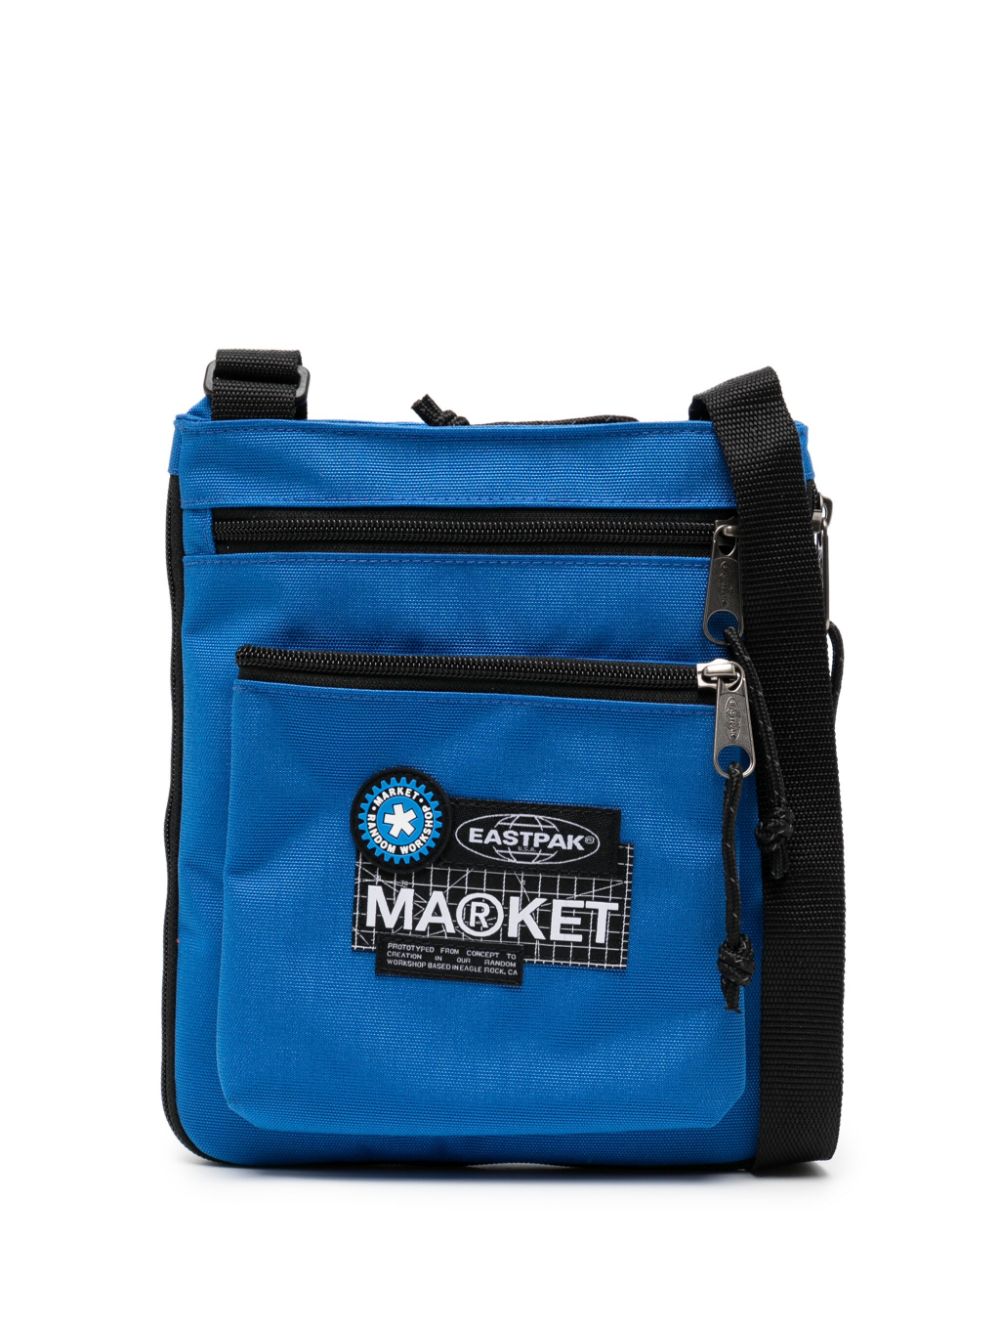 Eastpak X Market Studios Rusher Shoulder Bag In Blue